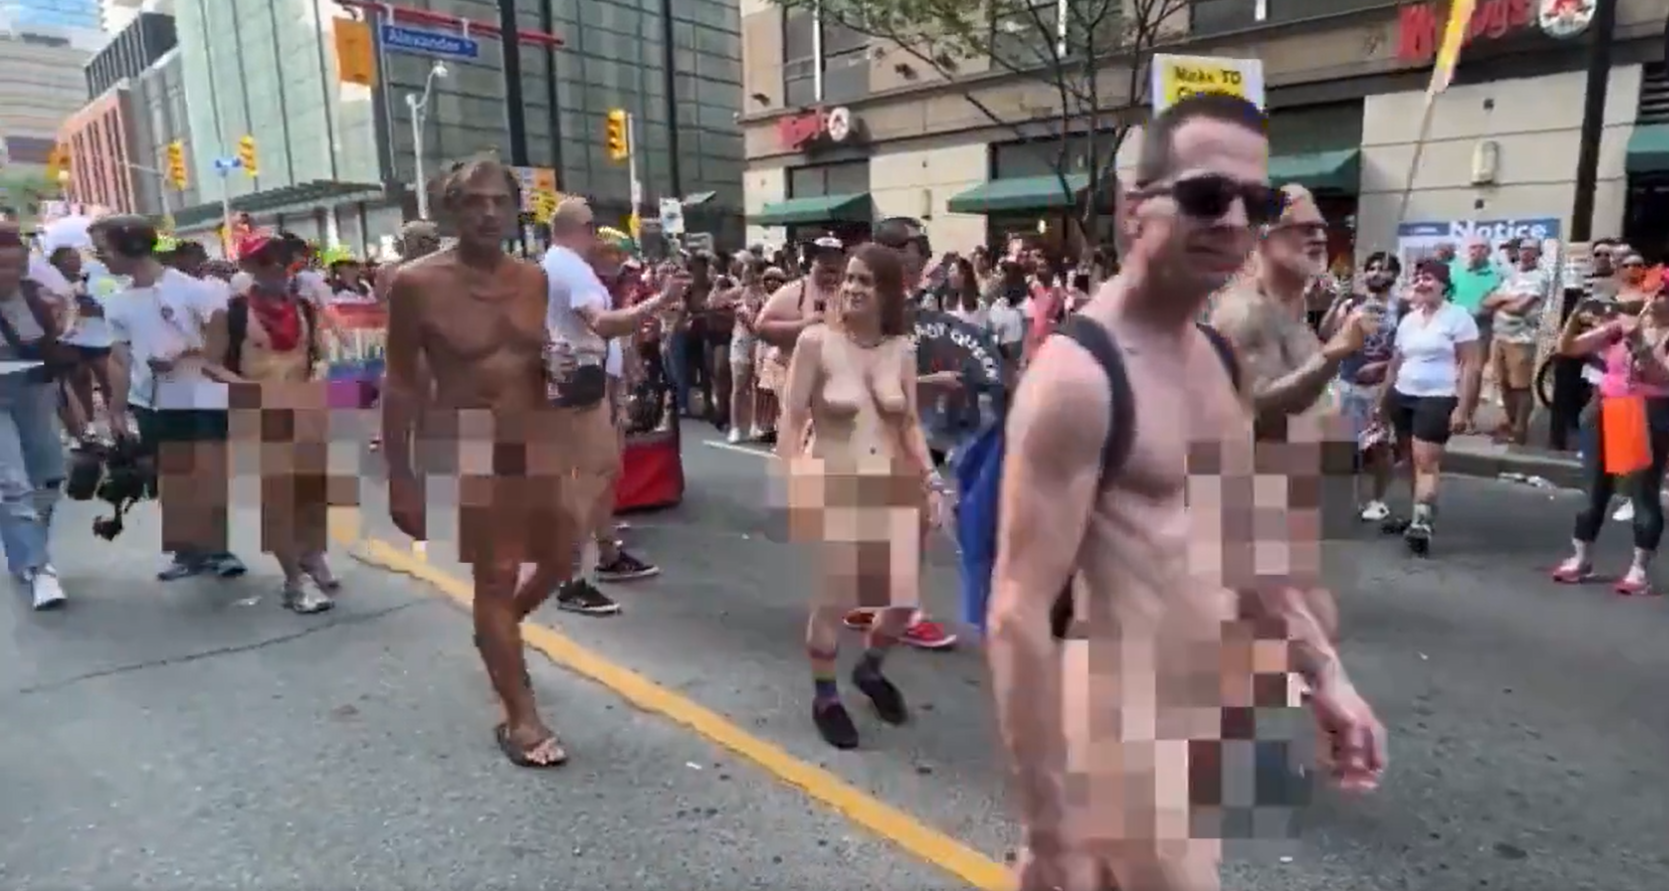 Σοκαριστικές εικόνες στις παρελάσεις των ΛΟΑΤΚΙ+ στις ΗΠΑ (βίντεο)